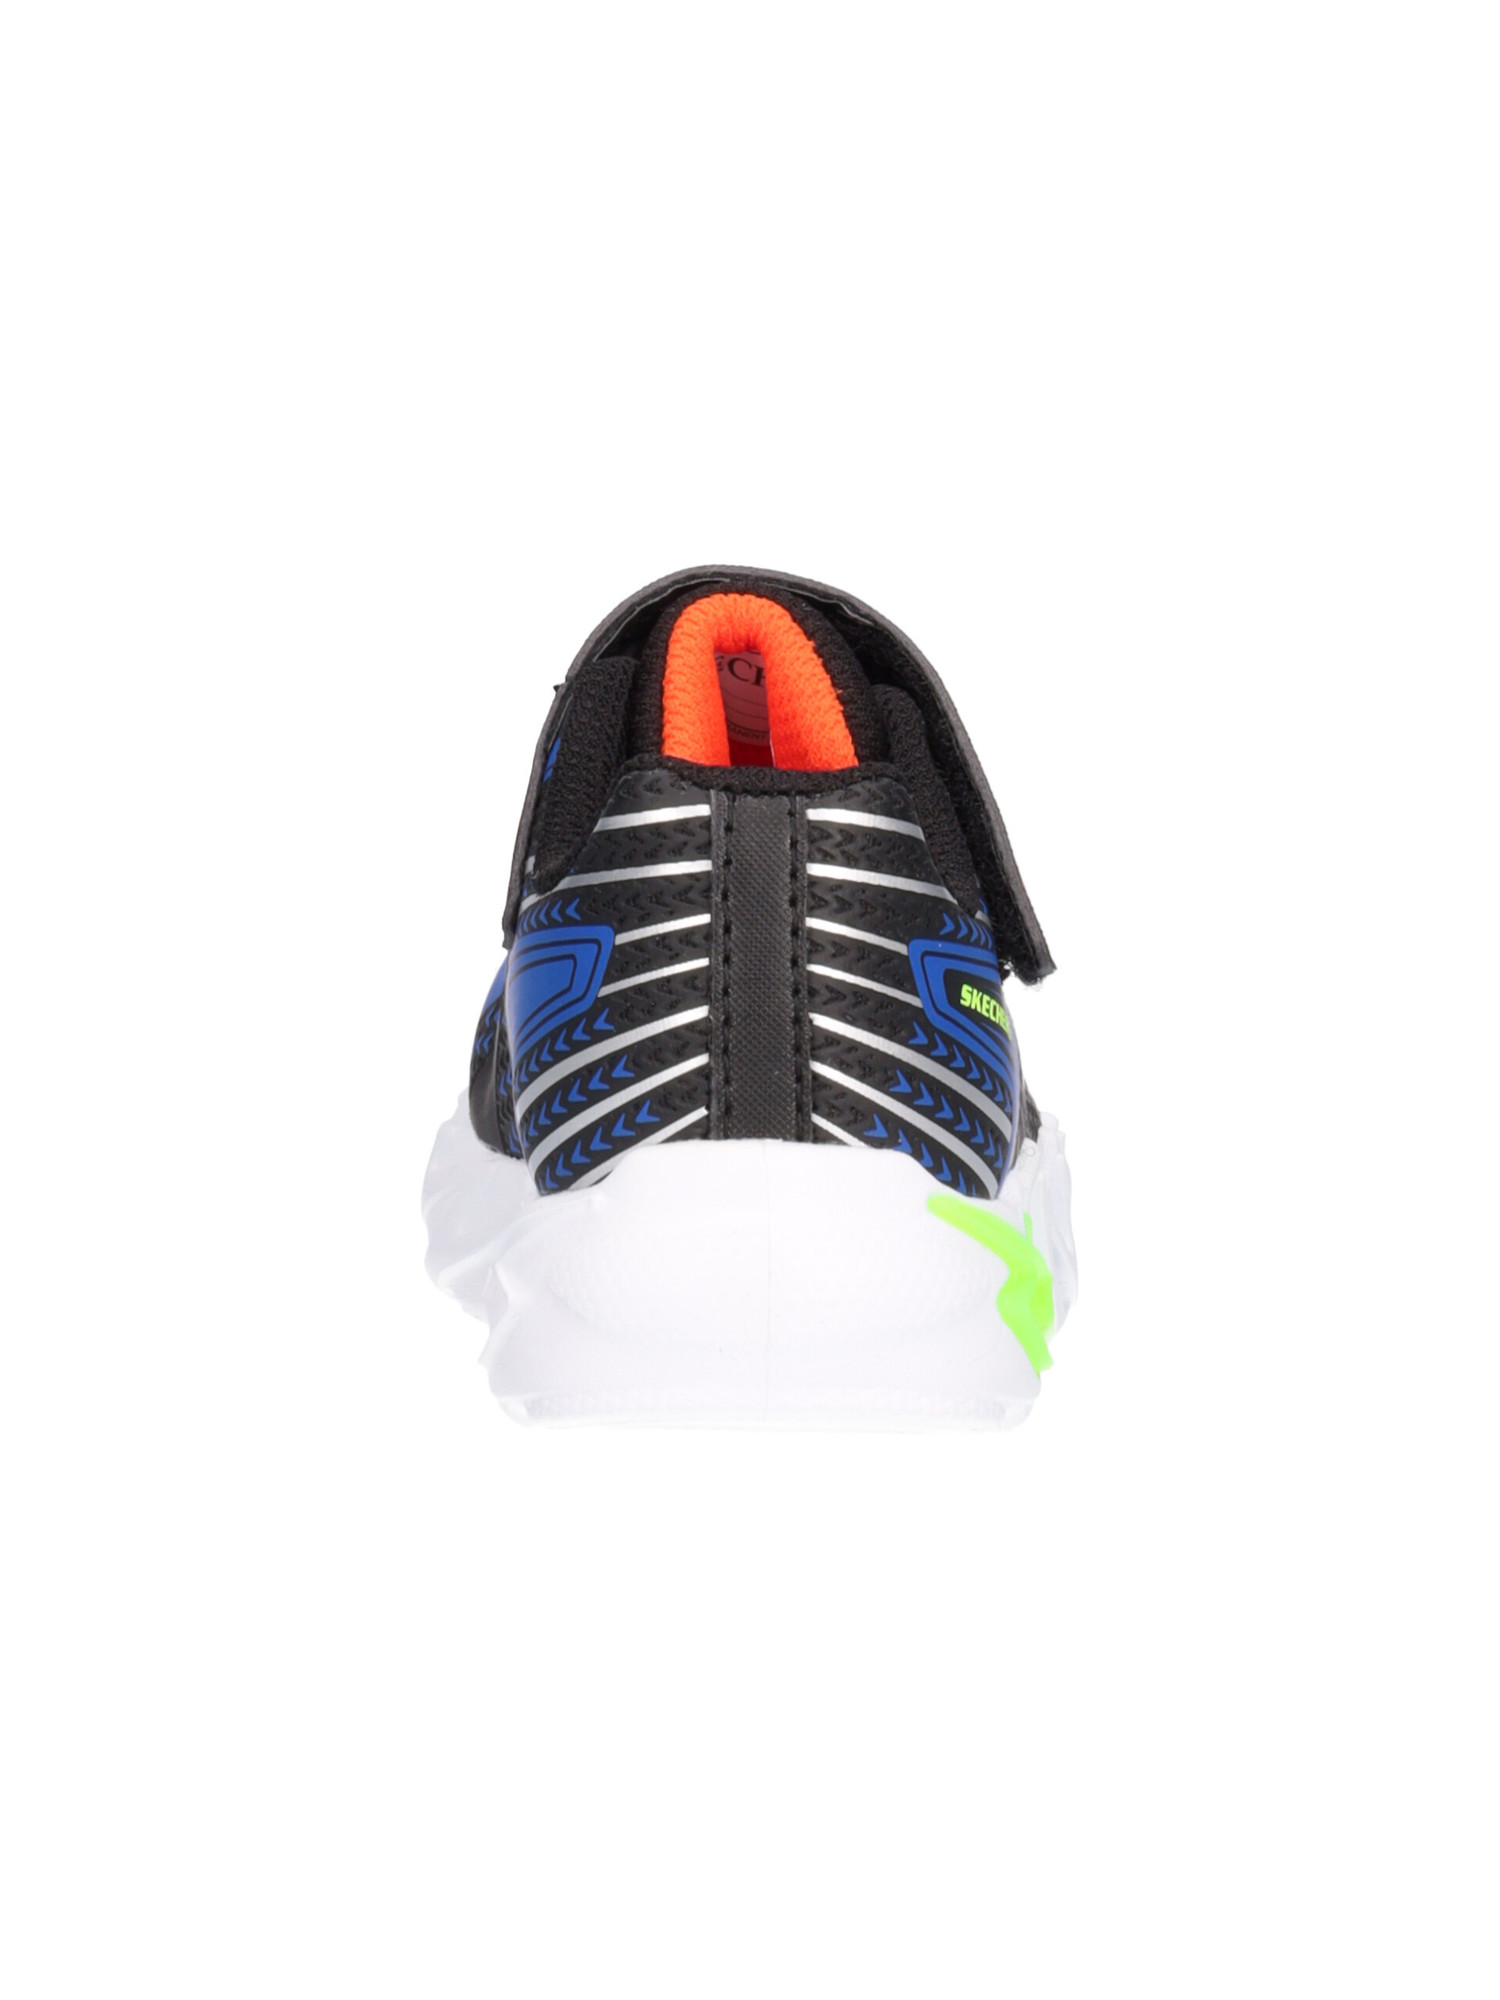 sneaker-skechers-primi-passi-bambino-nera-6ad9f0